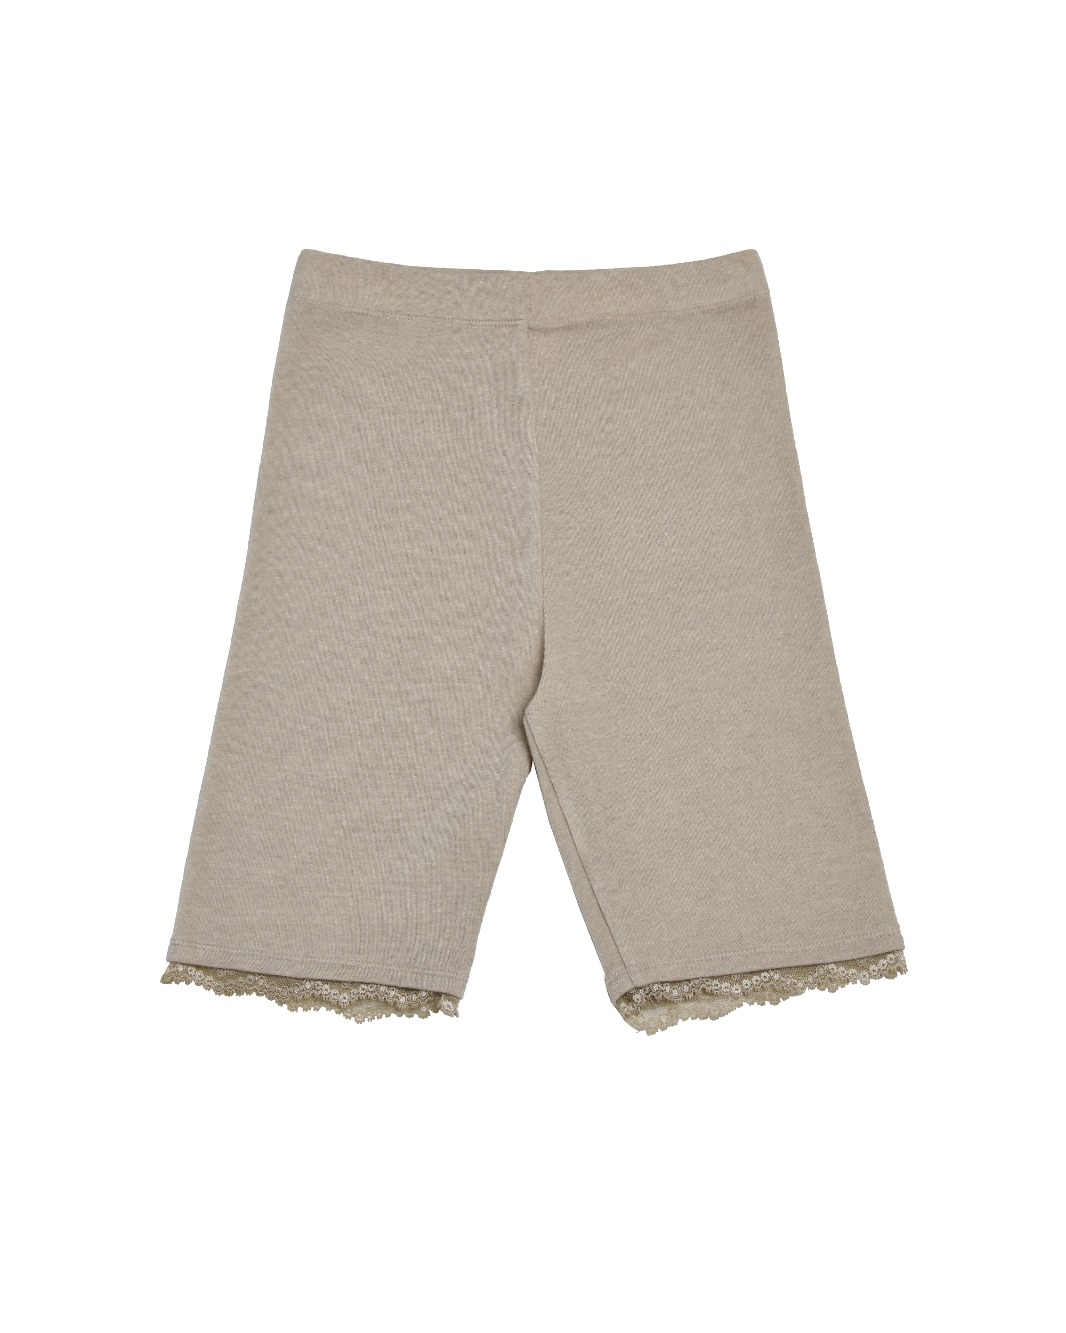 Cozy Lace Shorts (Beige)